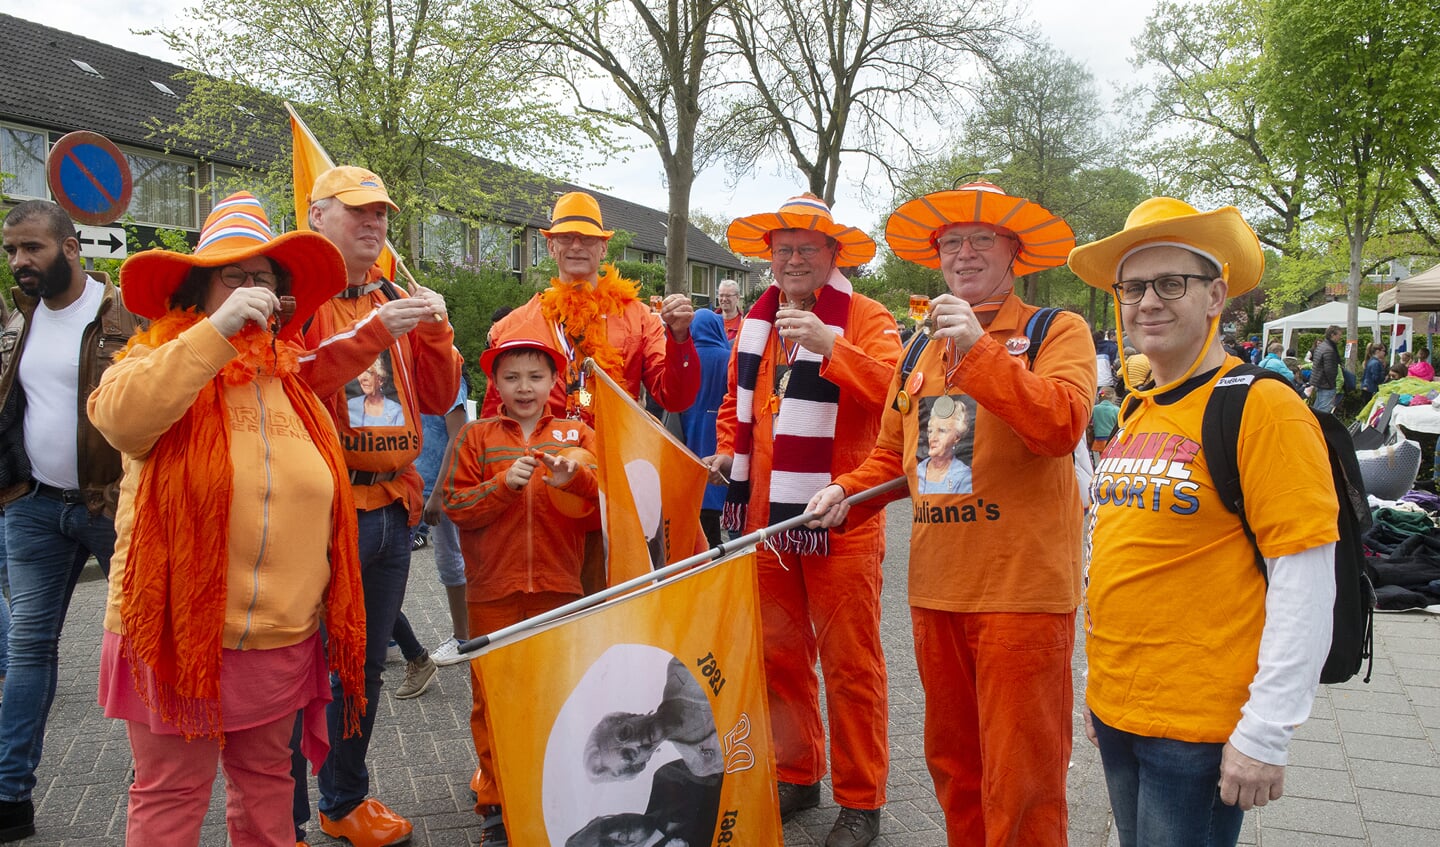 Het KOBC, Koninklijk OranjeBitter Committee